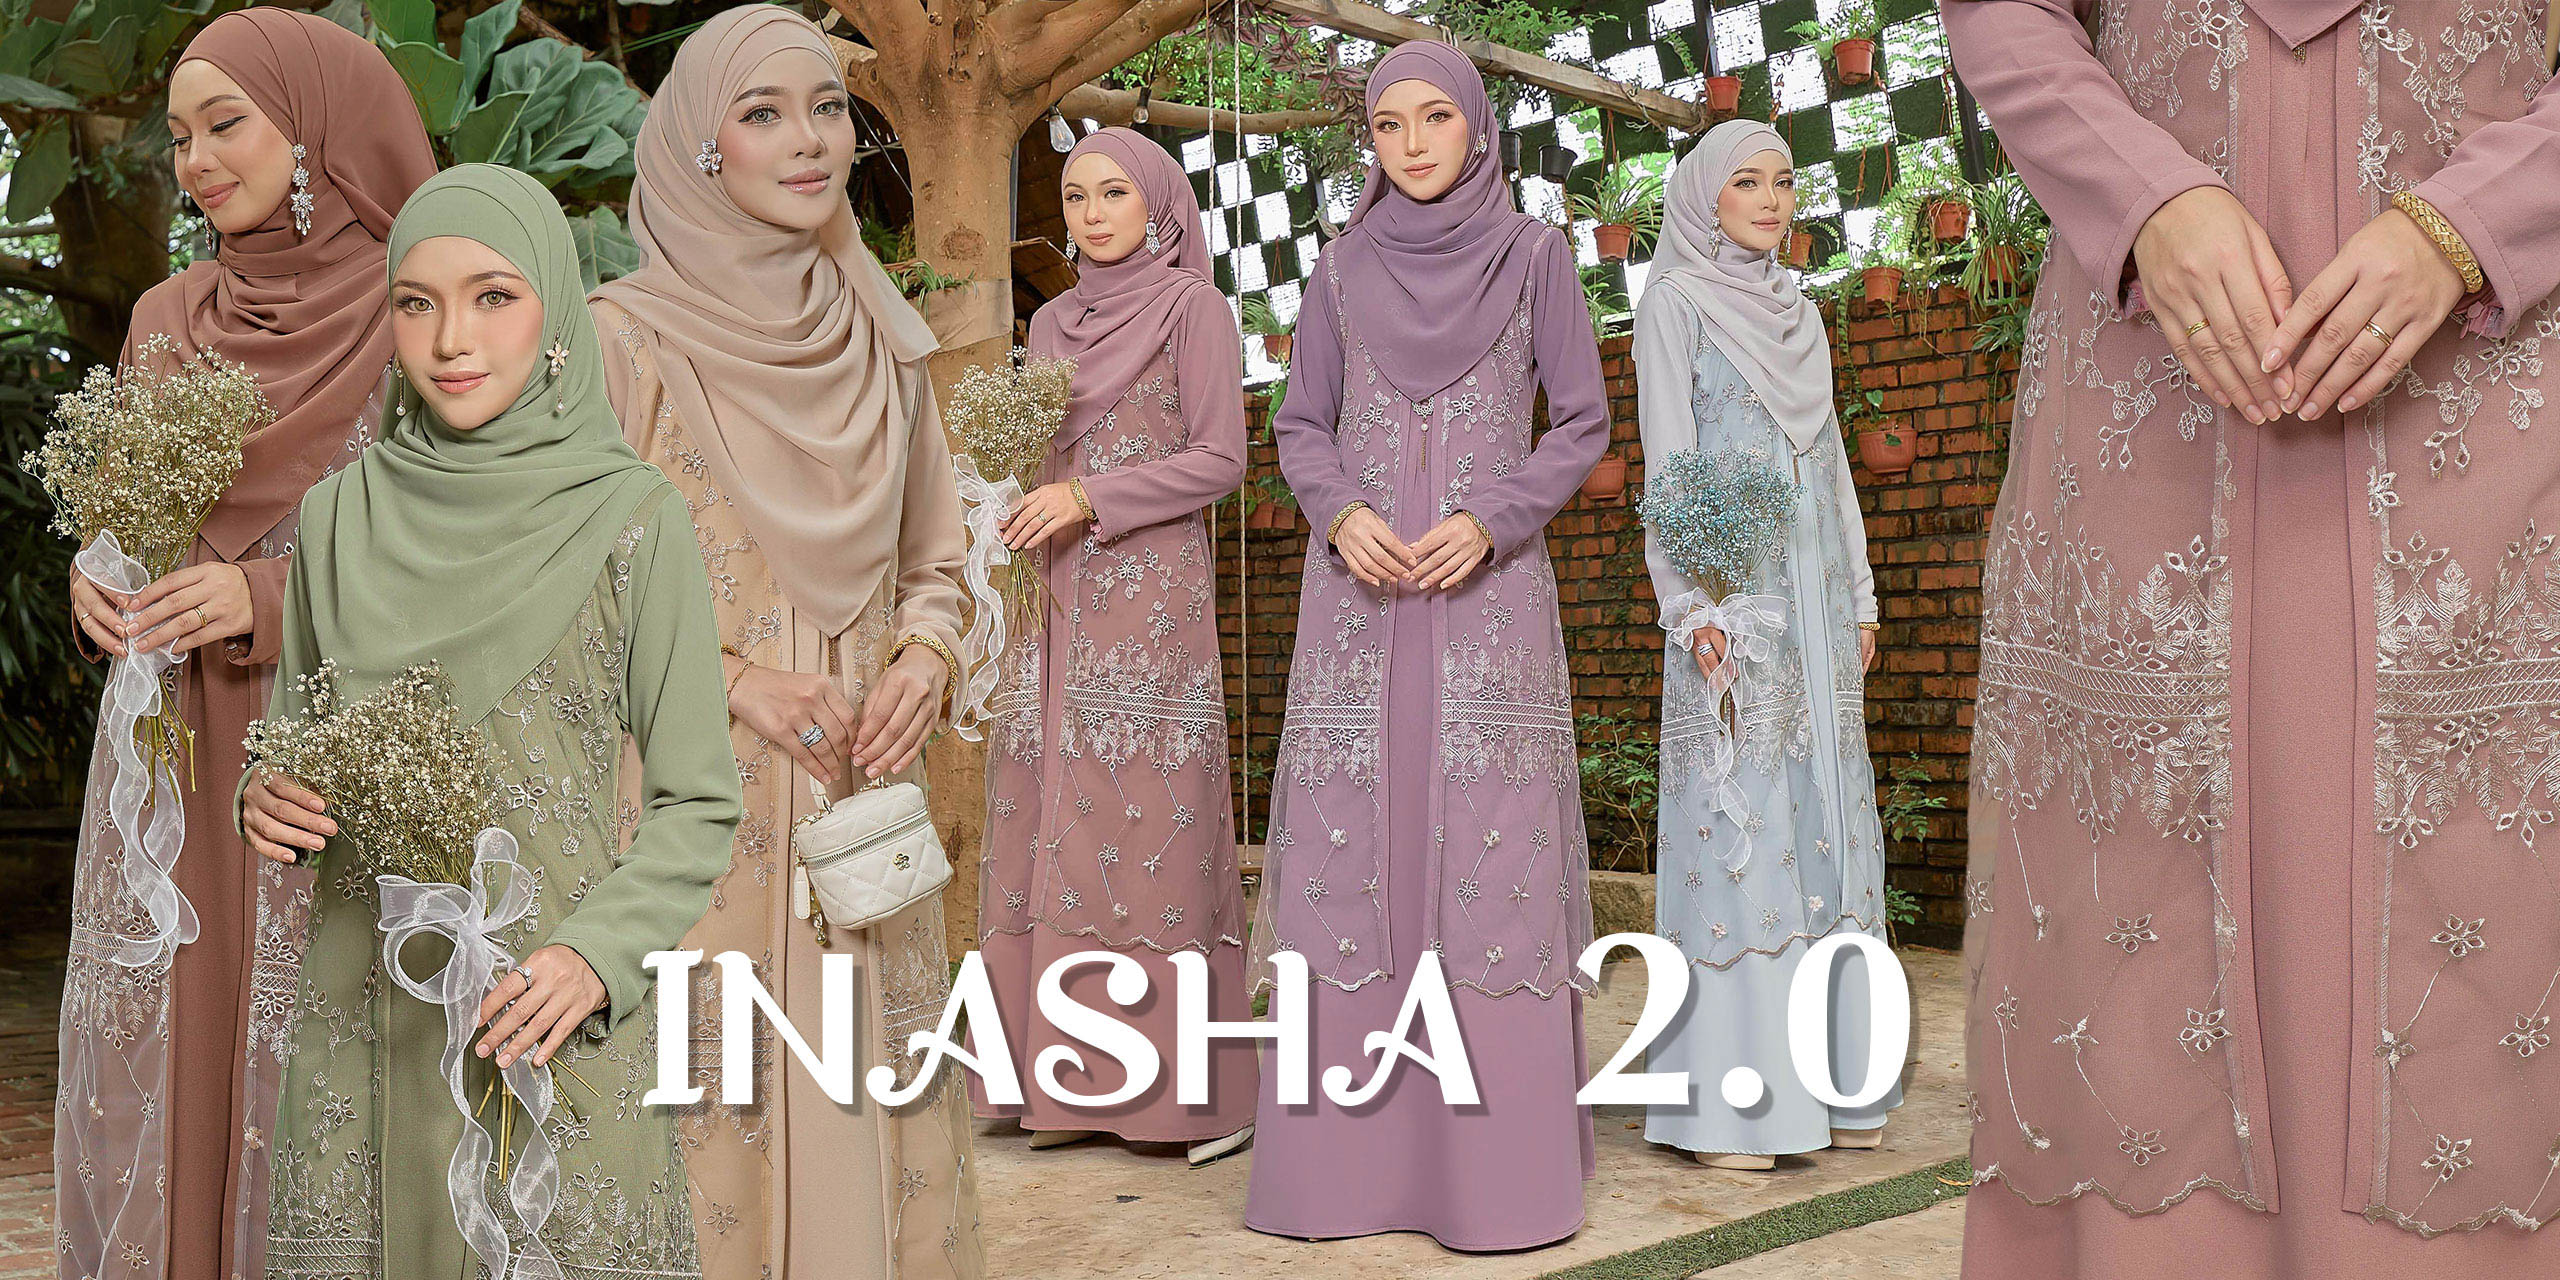 Inasha 2.0